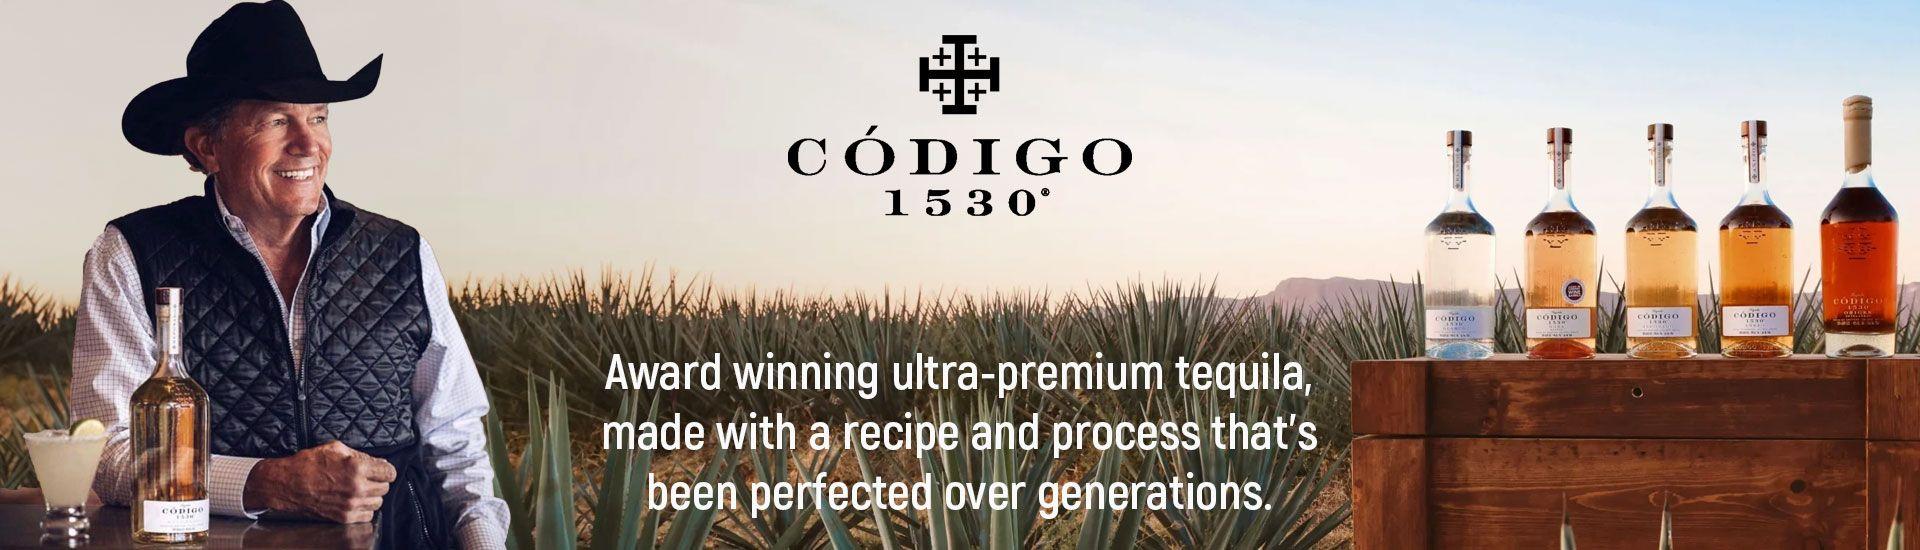 Codigo 1530  Tequila Matchmaker